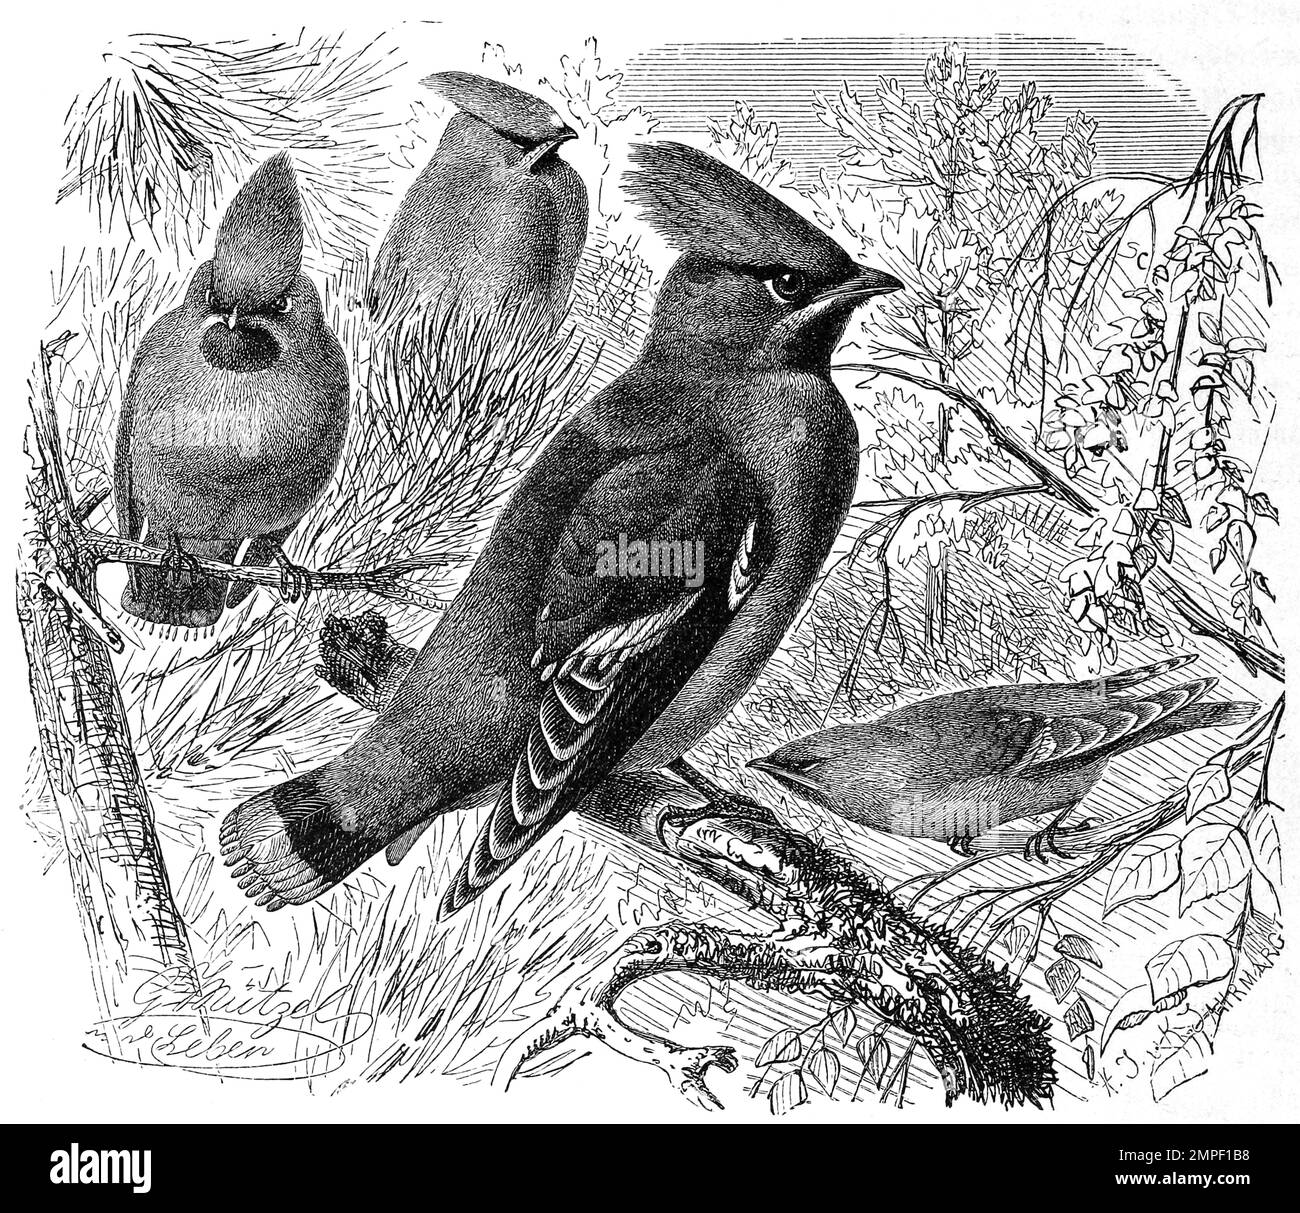 Vogel, Seidenschwanz, Bombycilla garrulus ist ein Singvogel aus der Familie der Seidenschwänze, Historisch, digital restauerierte Reproduktion von einer Vorlage aus dem 19. Jahrhundert Banque D'Images